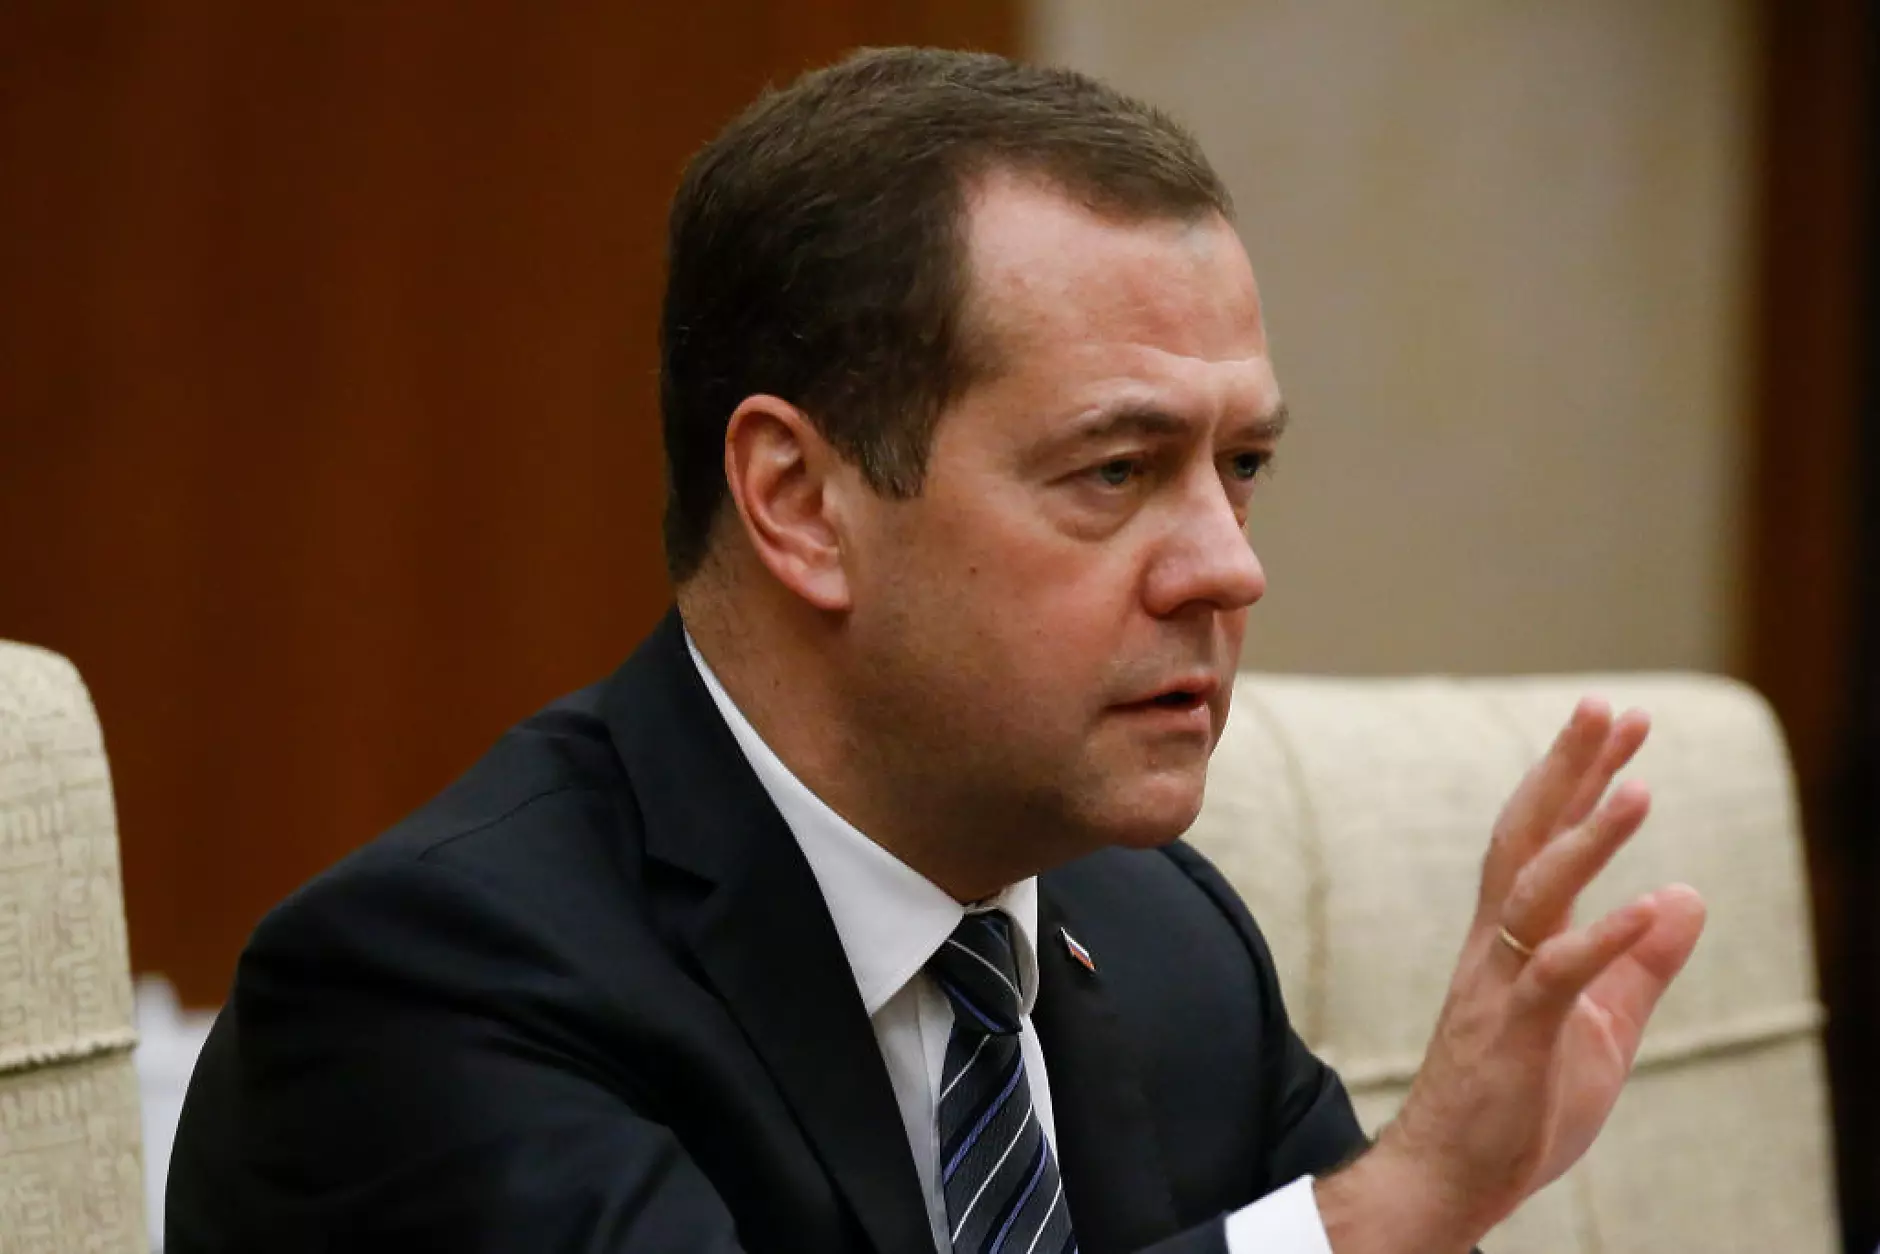 Медведев с нови провокации: Русия води свещена битка със сатаната